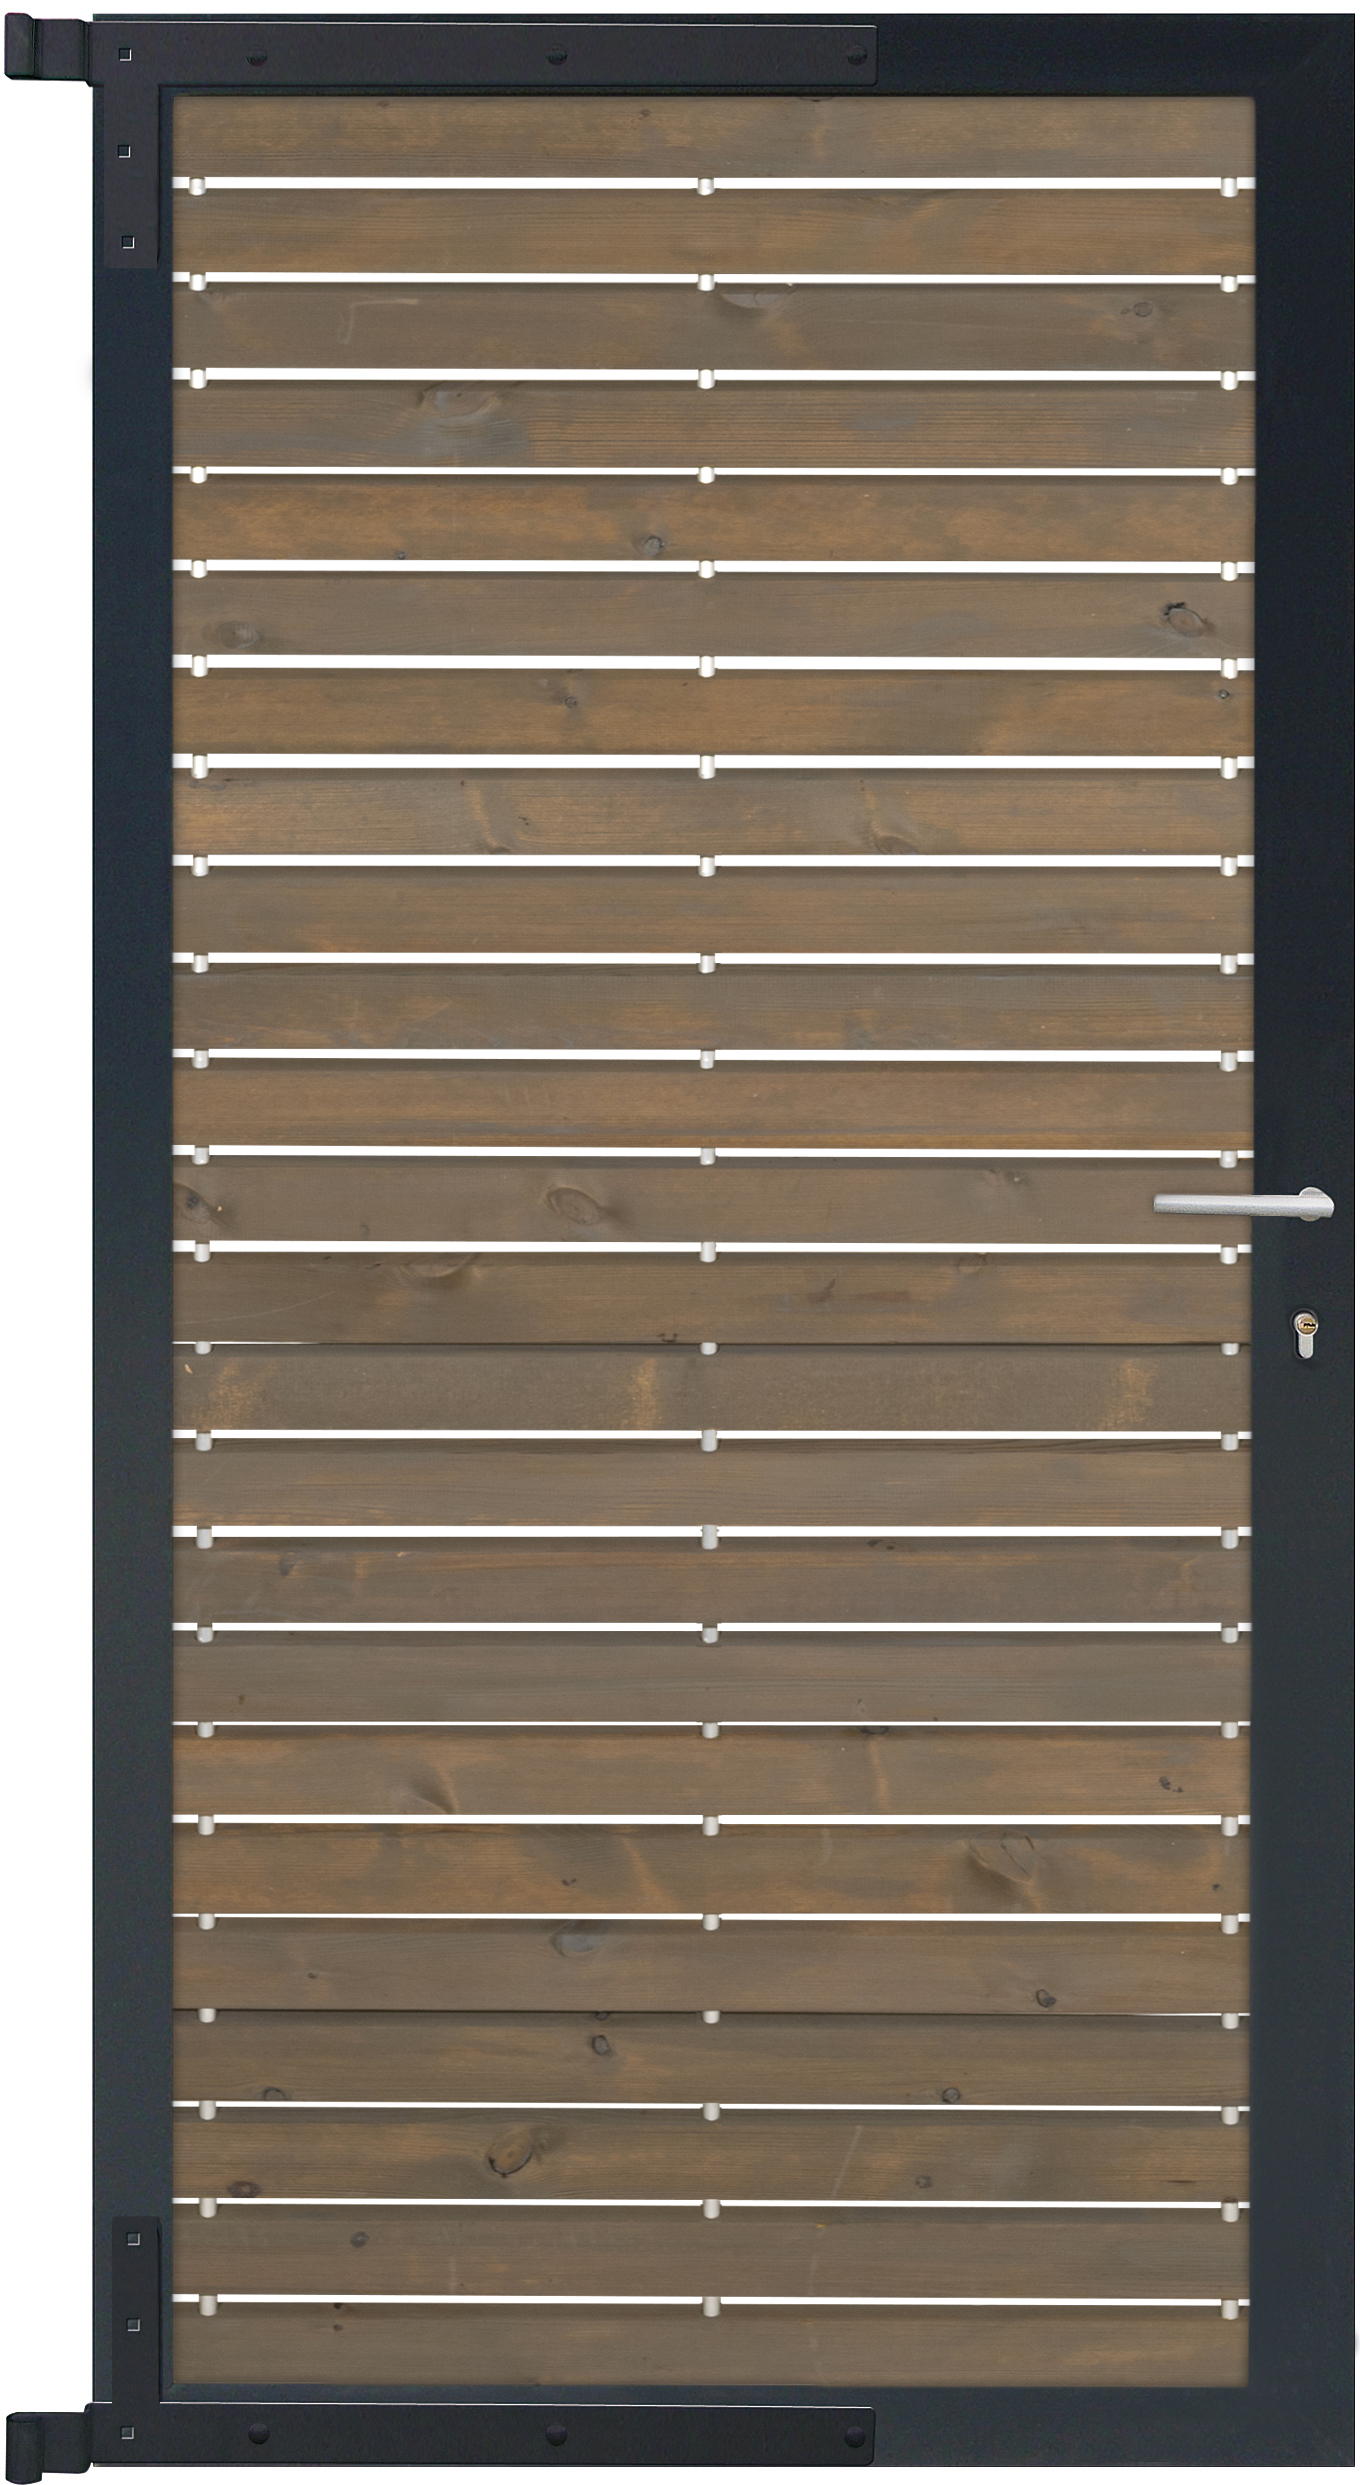 Rhombus-Steckzaun nordische Kiefer Grau/anthrazit, 10 Jahre Farbechtheit Zauntor 90x180 cm, mit Aluminium Rahmen, inkl. Beschlagsatz in anthrazit 